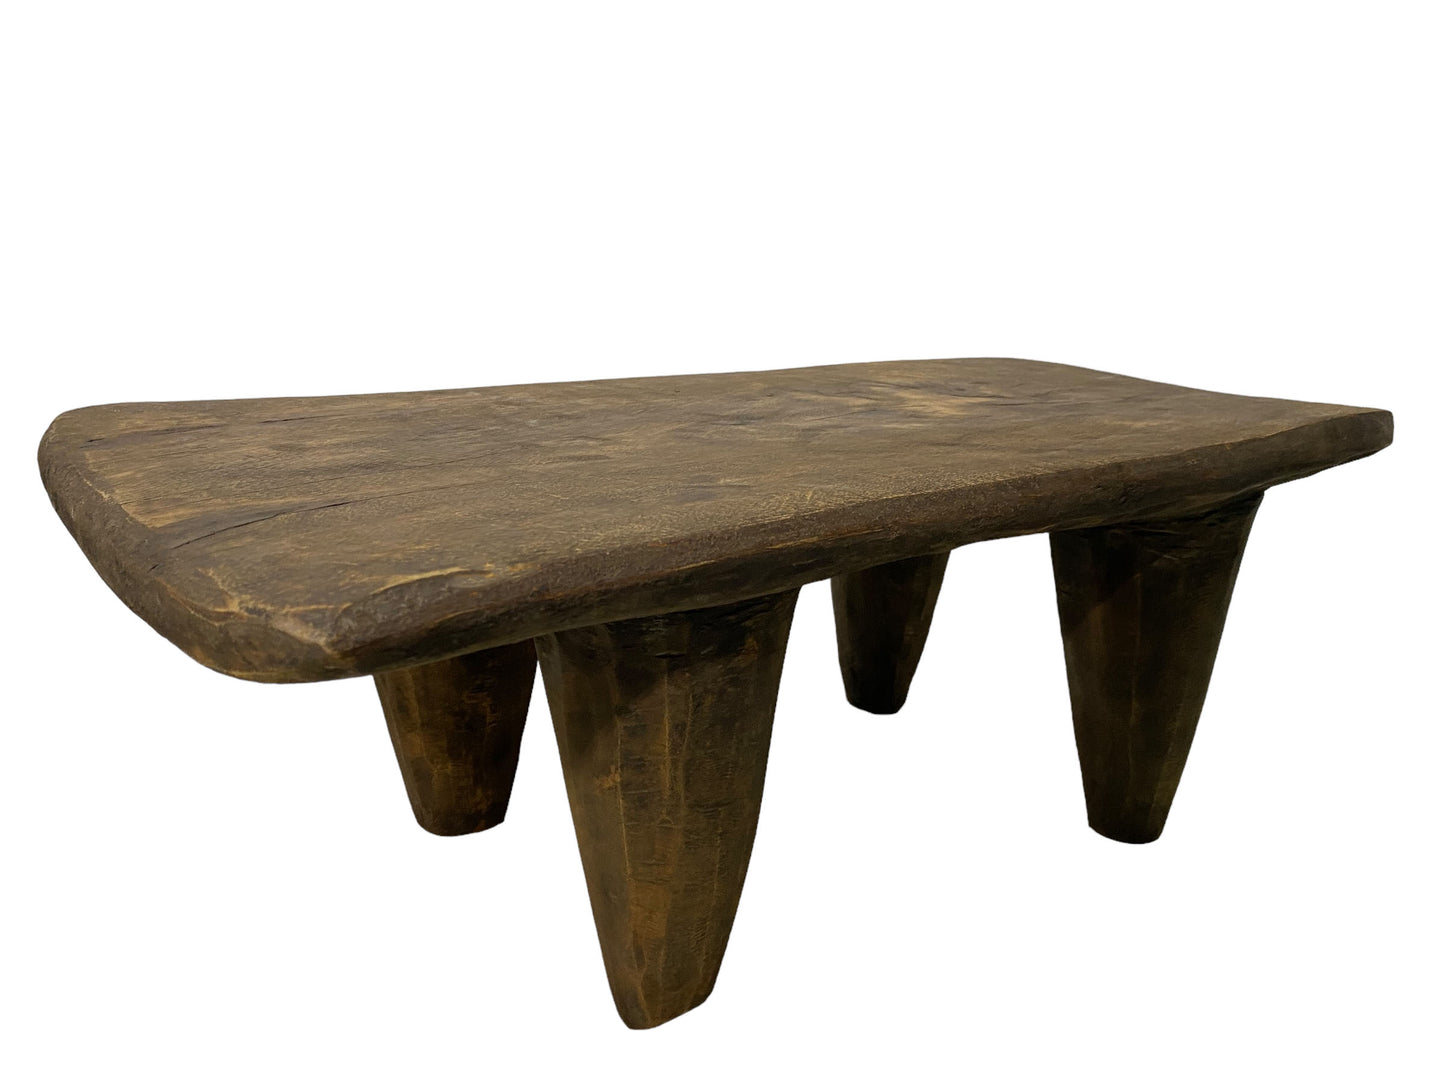 # 5532 Superb Rustic Vintage   African Senufo Stool / Table  I coast 23" W